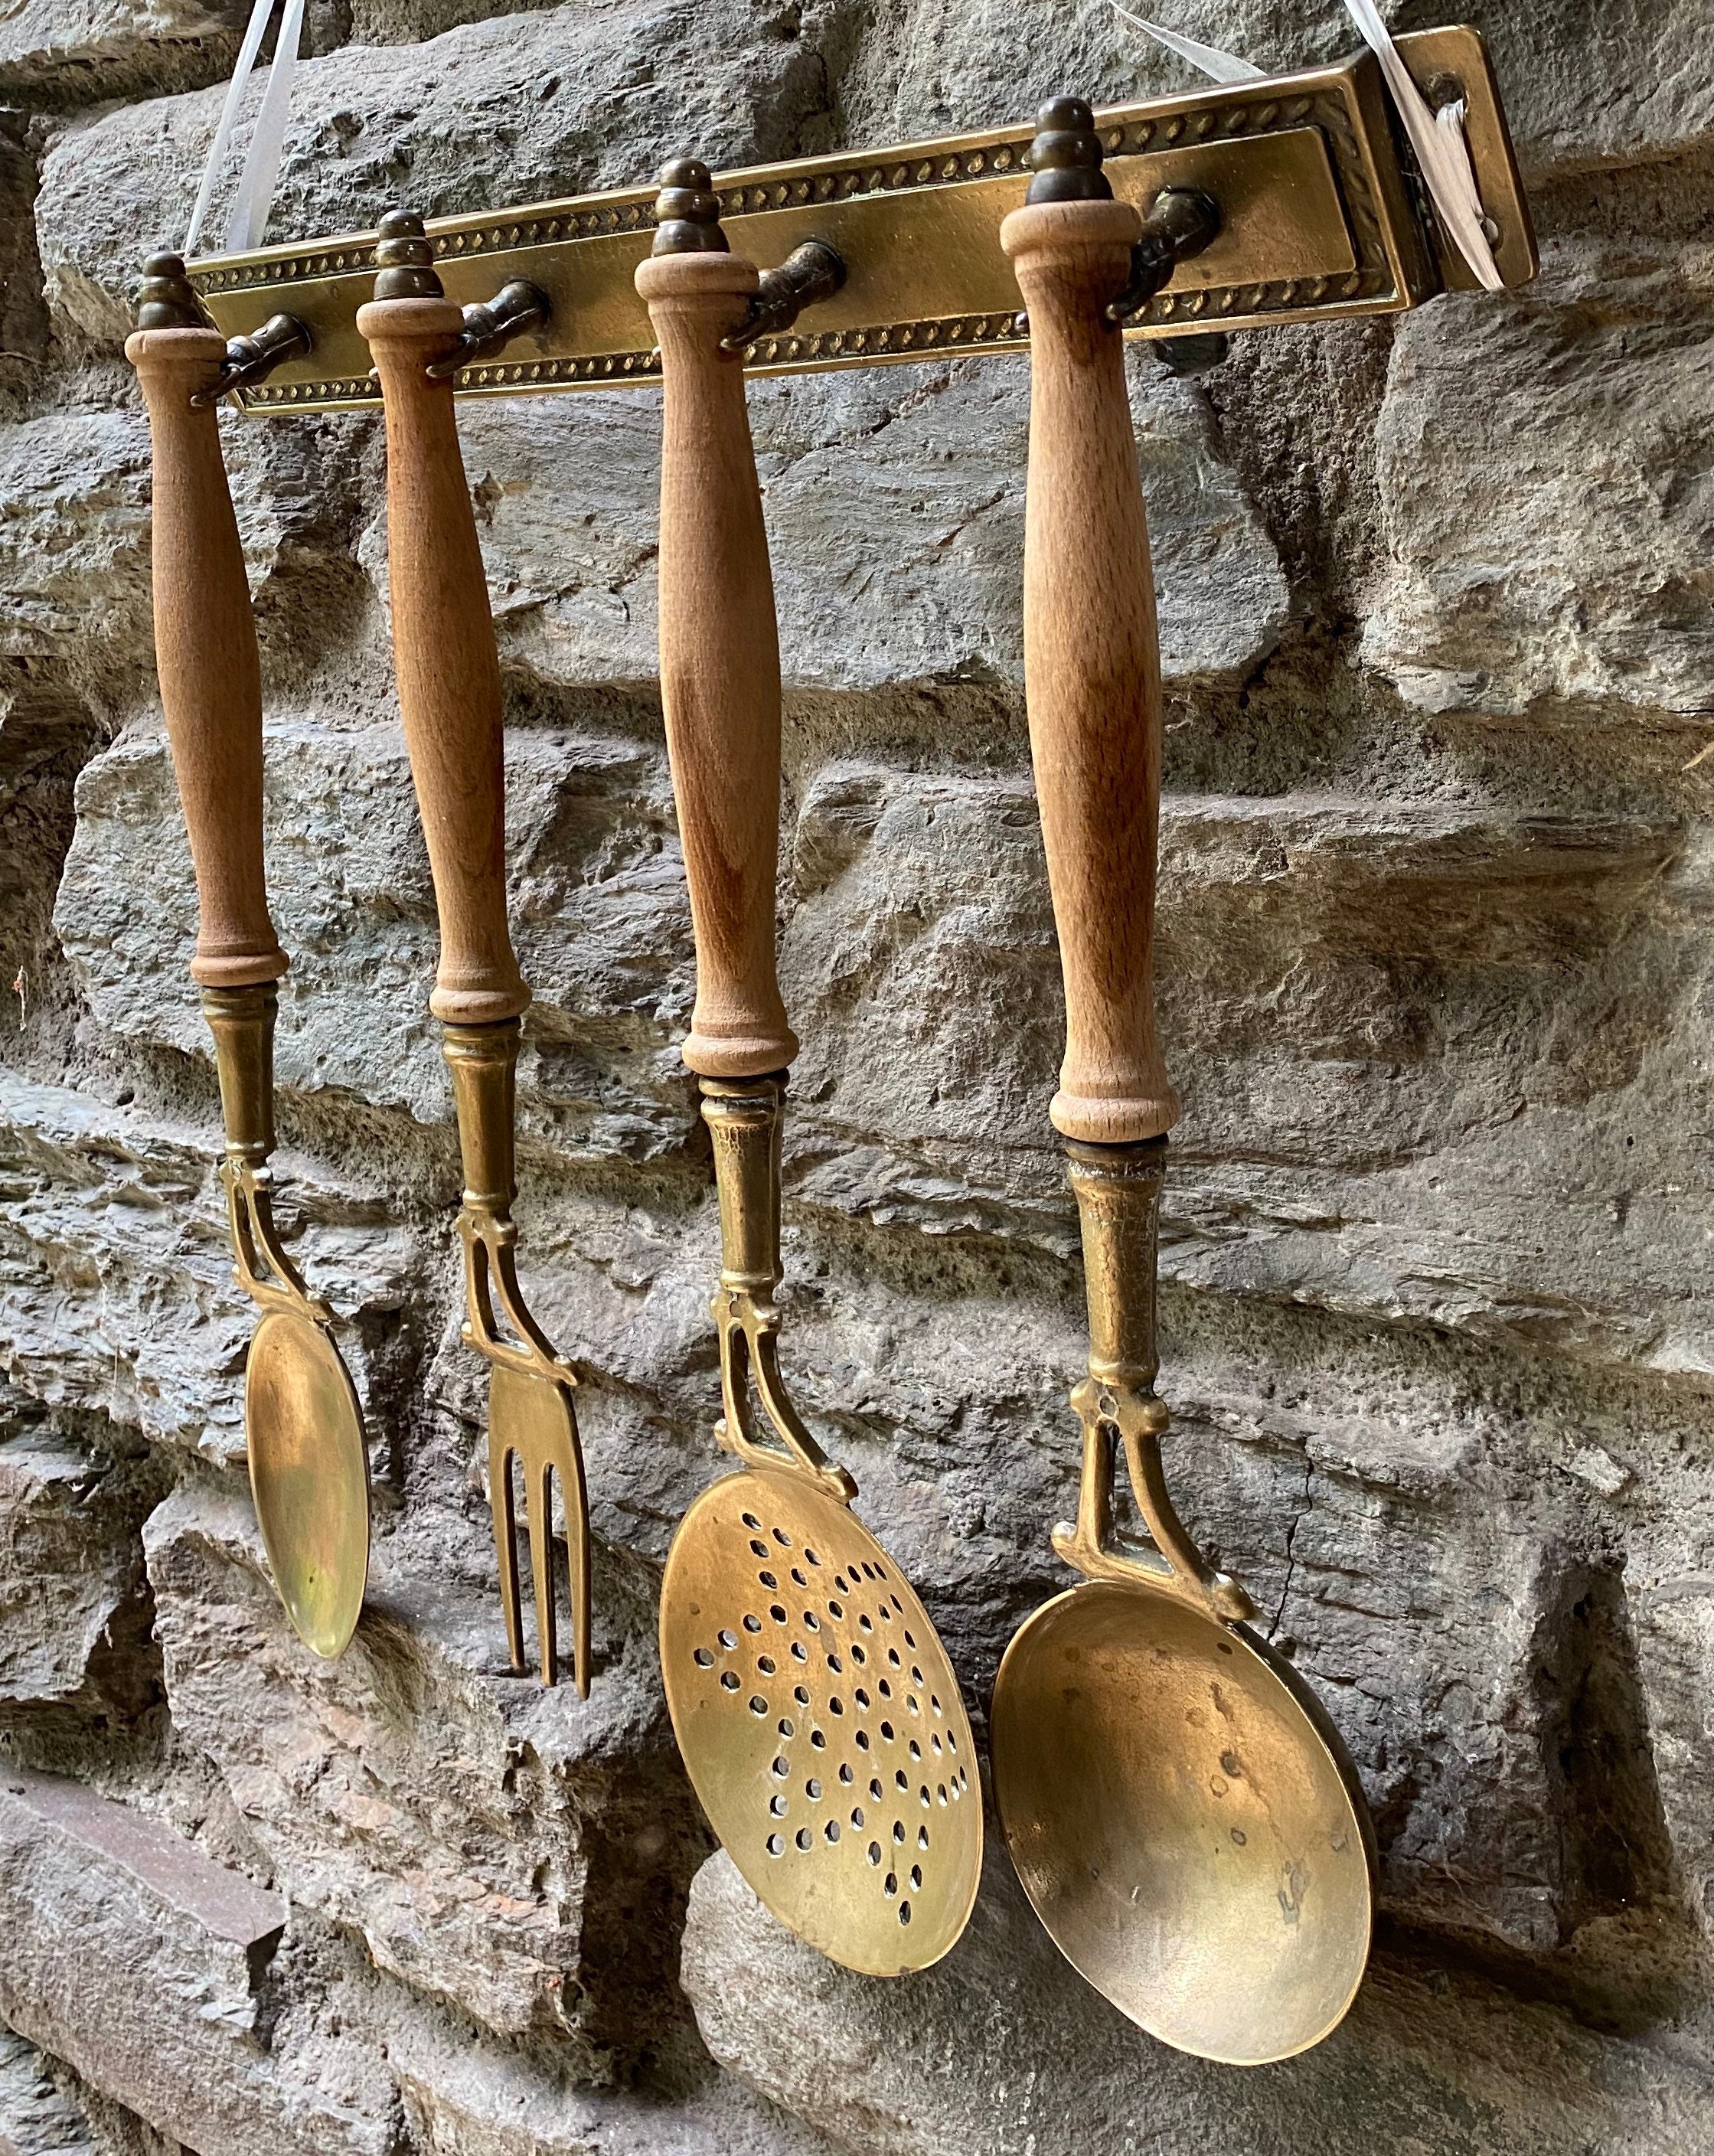 French vintage brass kitchen utensils with rail